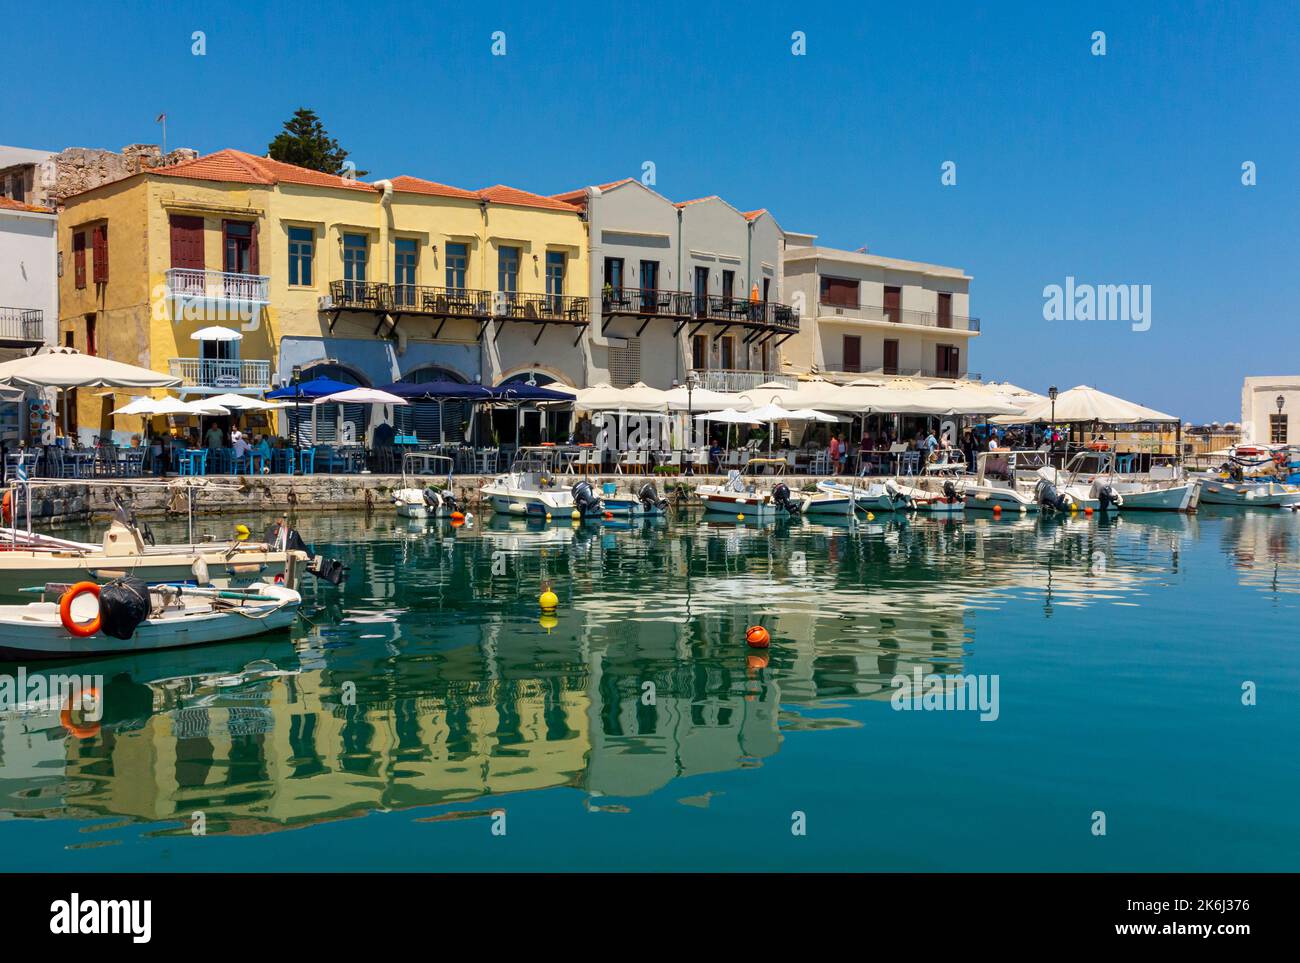 Des bateaux amarrés dans le vieux port de Rethymno ou Rethymnon, station balnéaire sur la côte nord de la Crète en Grèce. Banque D'Images